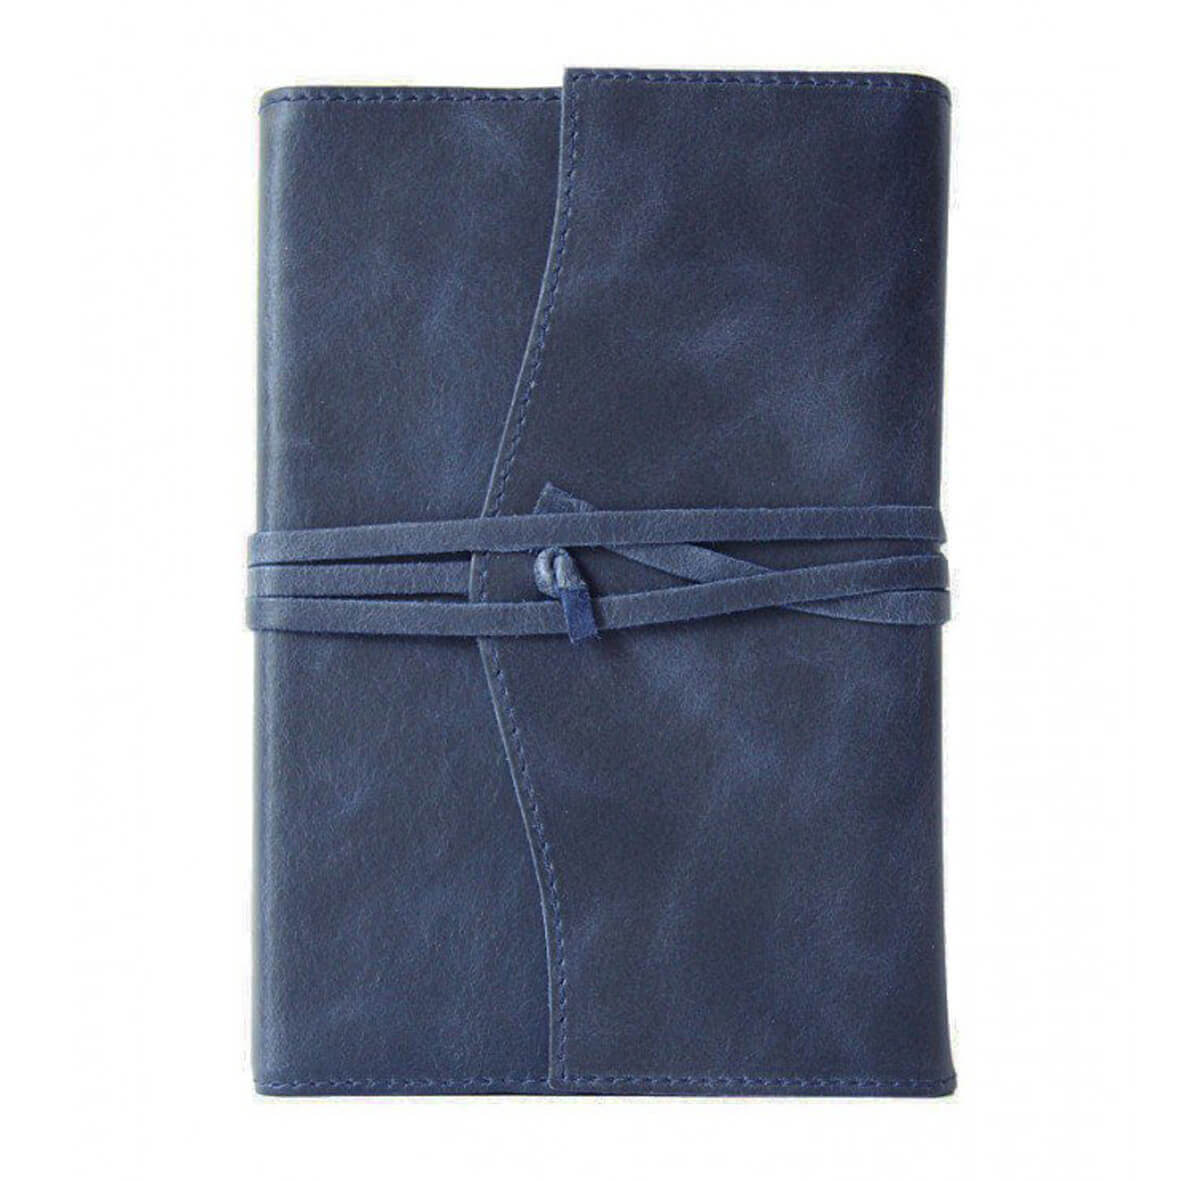 Leren notitieboek navulbaar blauw kopen | My Lovely